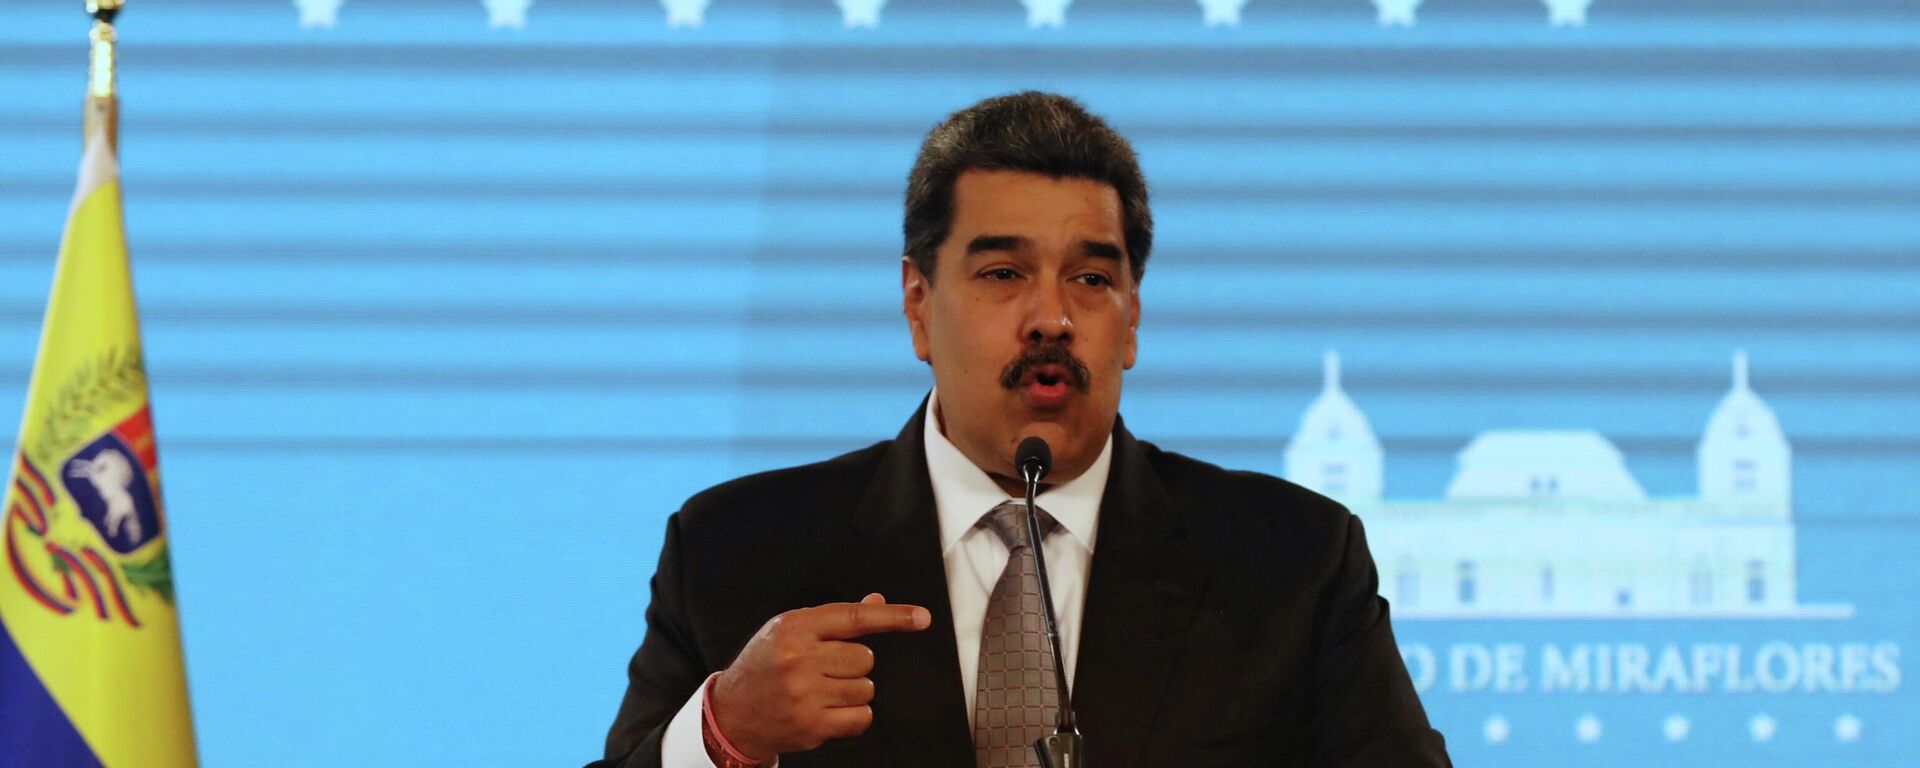 Nicolás Maduro, presidente de Venezuela - Sputnik Mundo, 1920, 13.07.2021